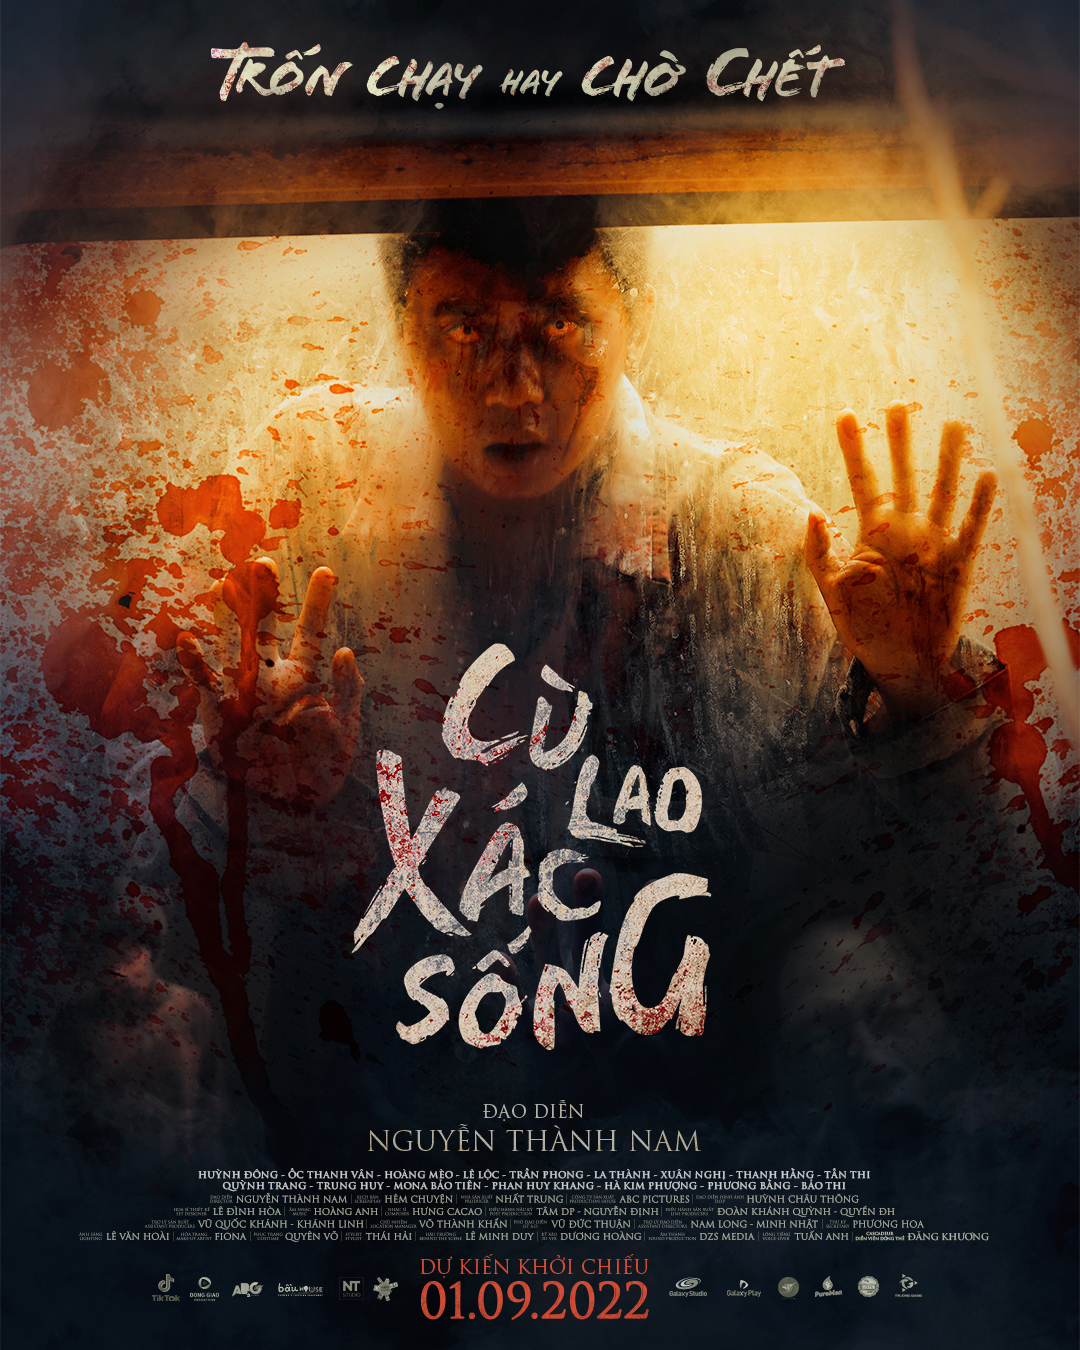 Đừng bao giờ bỏ qua cơ hội để tìm hiểu về những bộ phim kinh dị Việt Nam đầy tâm hồn. Bức ảnh này sẽ giúp bạn dễ dàng truy cập vào thế giới ma quái của phim kinh dị Việt Nam.